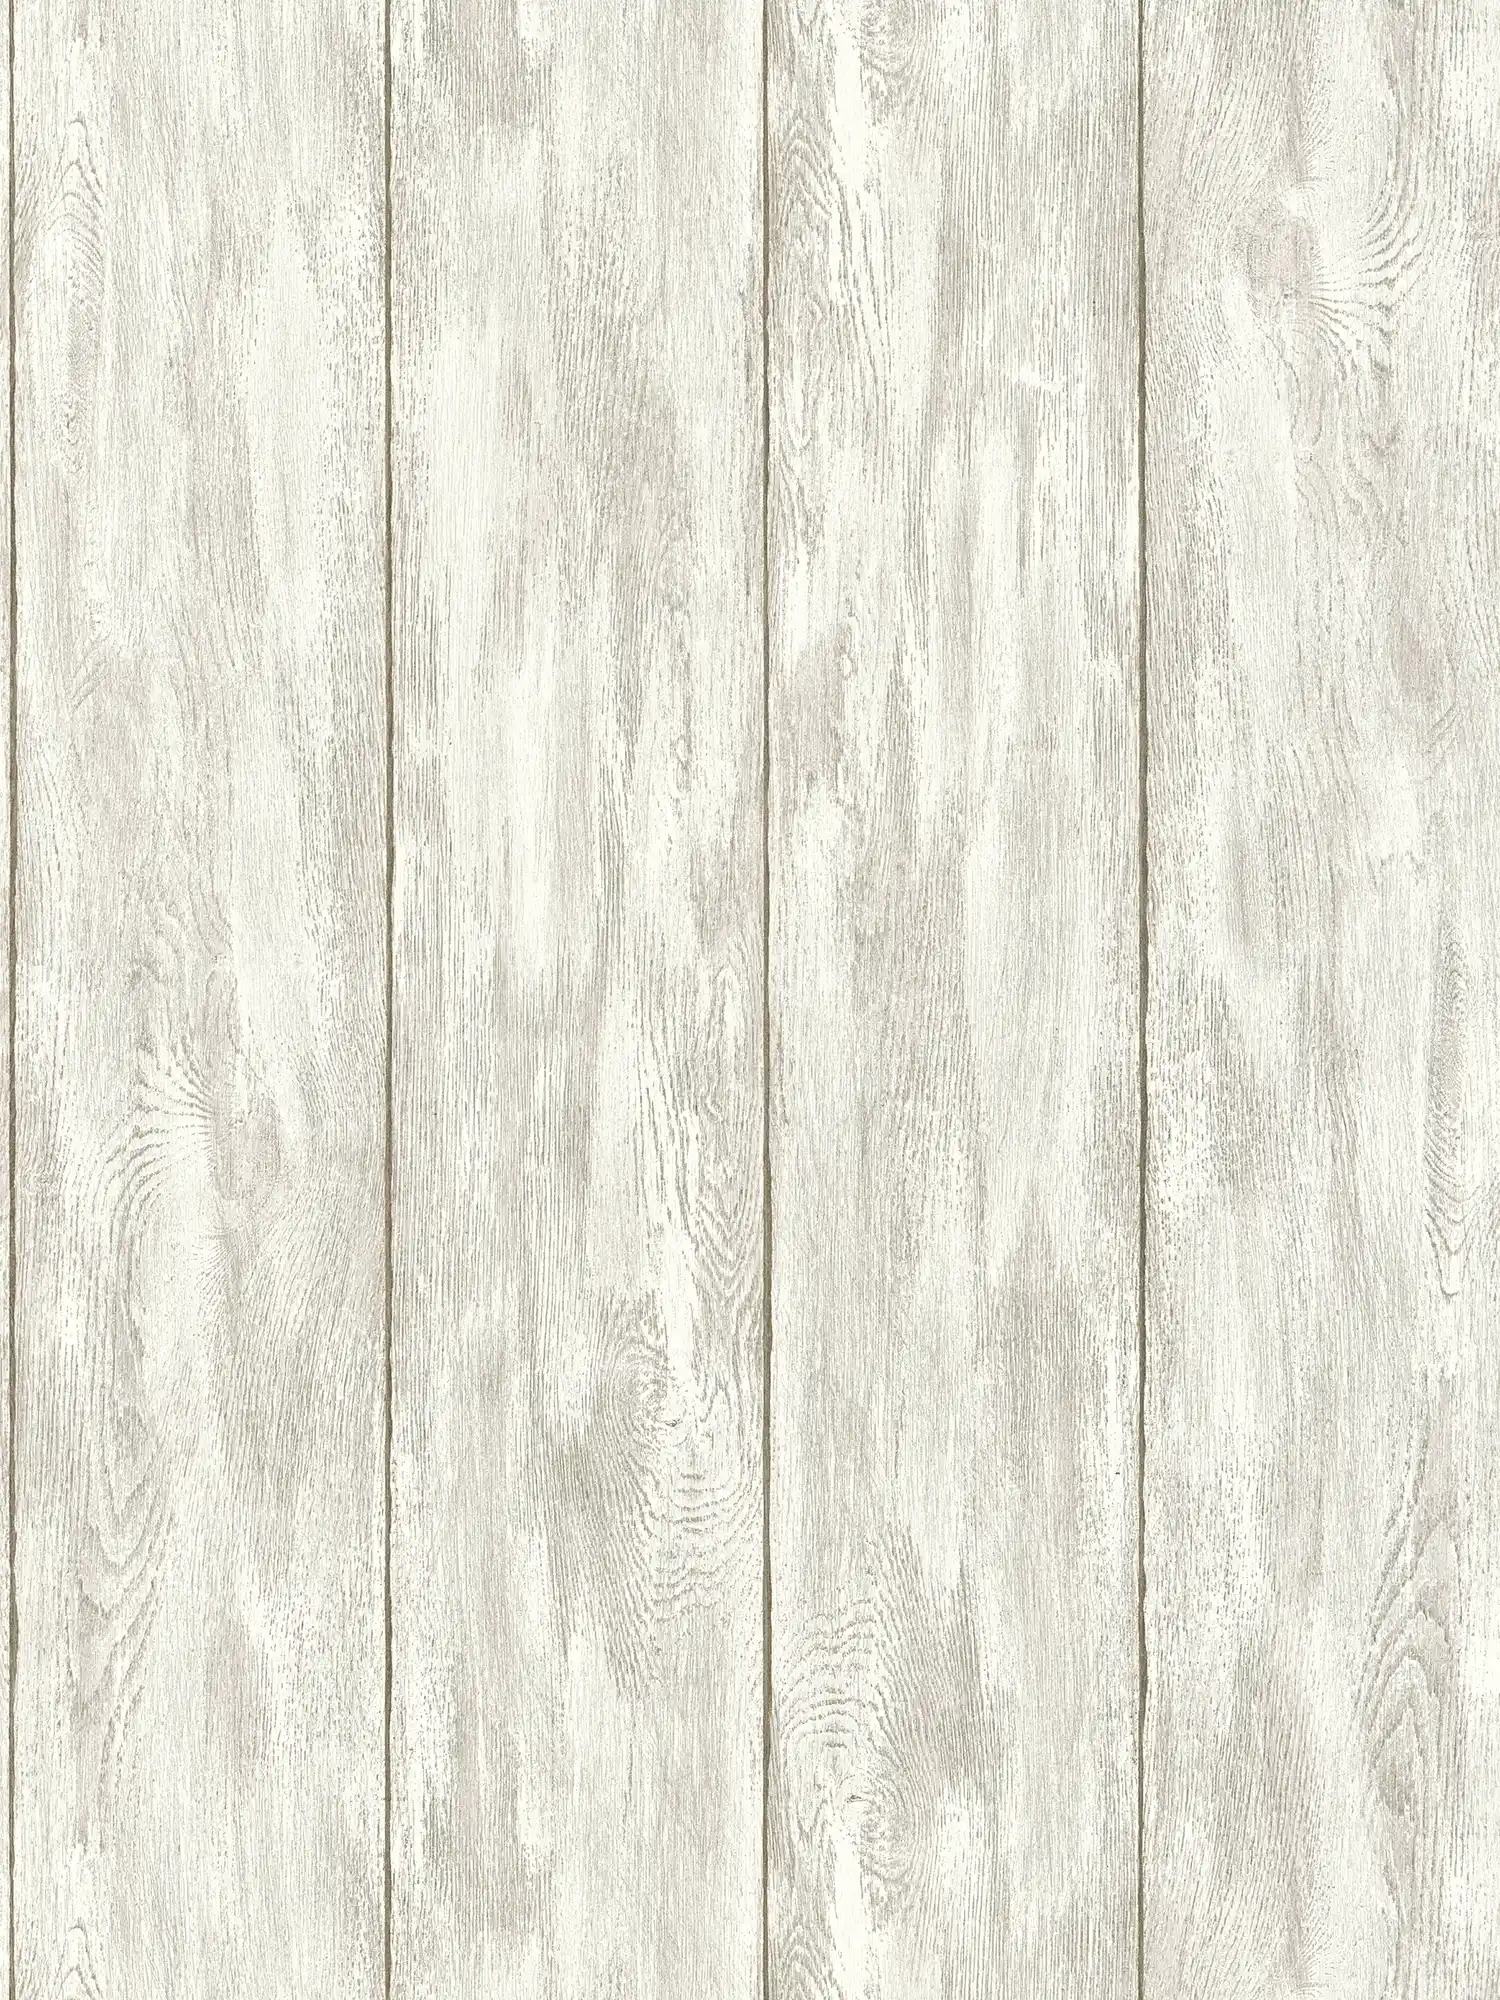 Behang houtlook voor een gezellig landhuisgevoel - beige, crème, grijs
